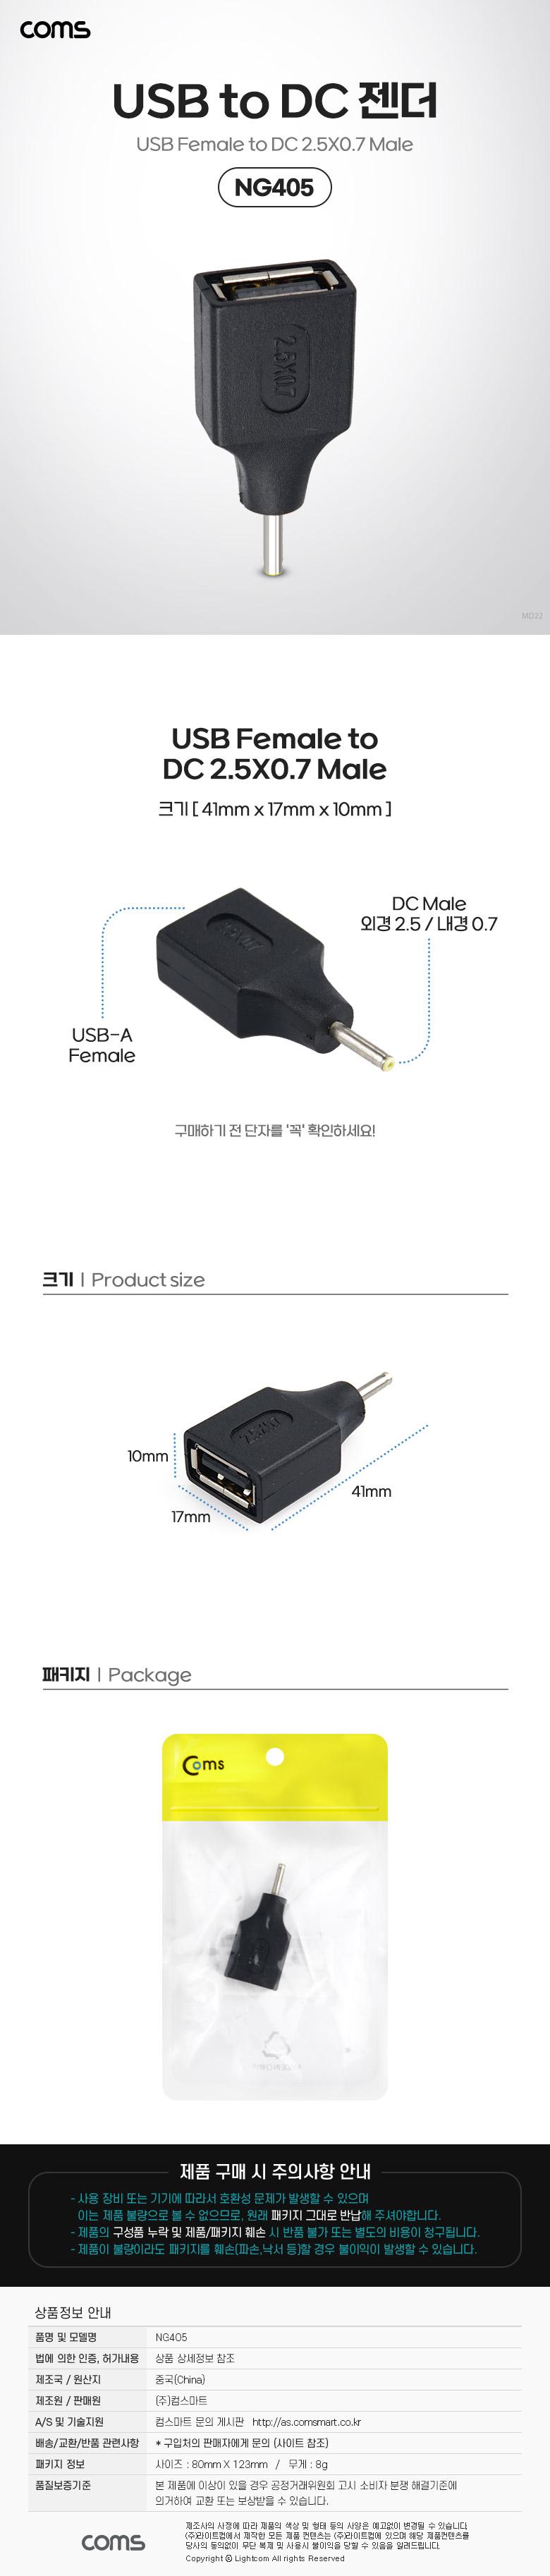 Coms USB   USB 2.0 A F to DC 2.5x0.7 M PC USB ǻͿ DC USBTODC  ǻͿǰ PCǰ